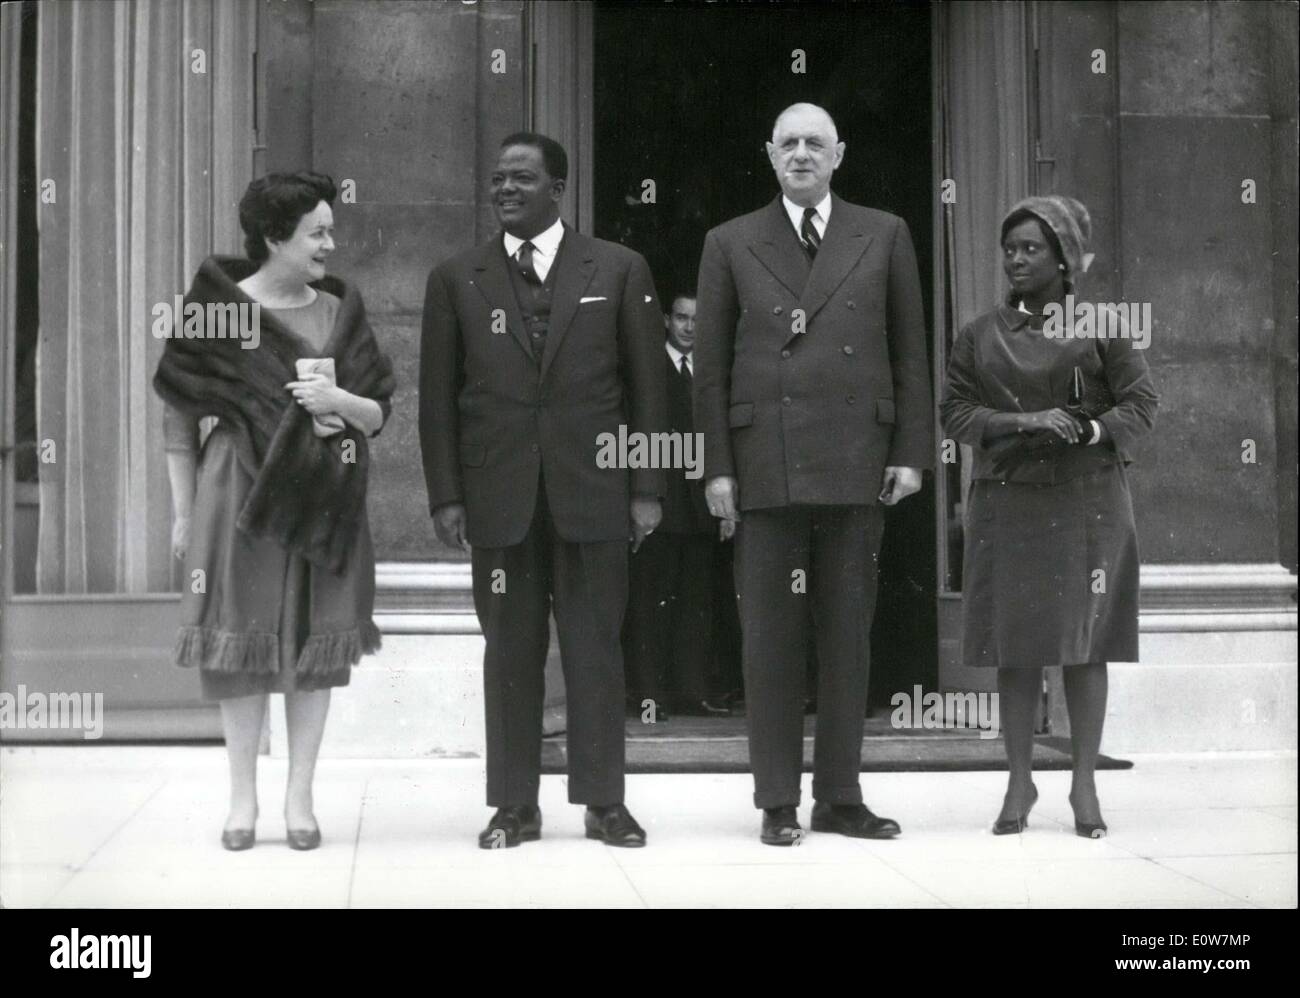 25 octobre 1961 - Monaco, le président du Dahomey, et son épouse, est arrivé en France aujourd'hui pour une visite officielle. Elles sont présentées ici sur les marches de l'Elysée avec le président français et son épouse. Banque D'Images